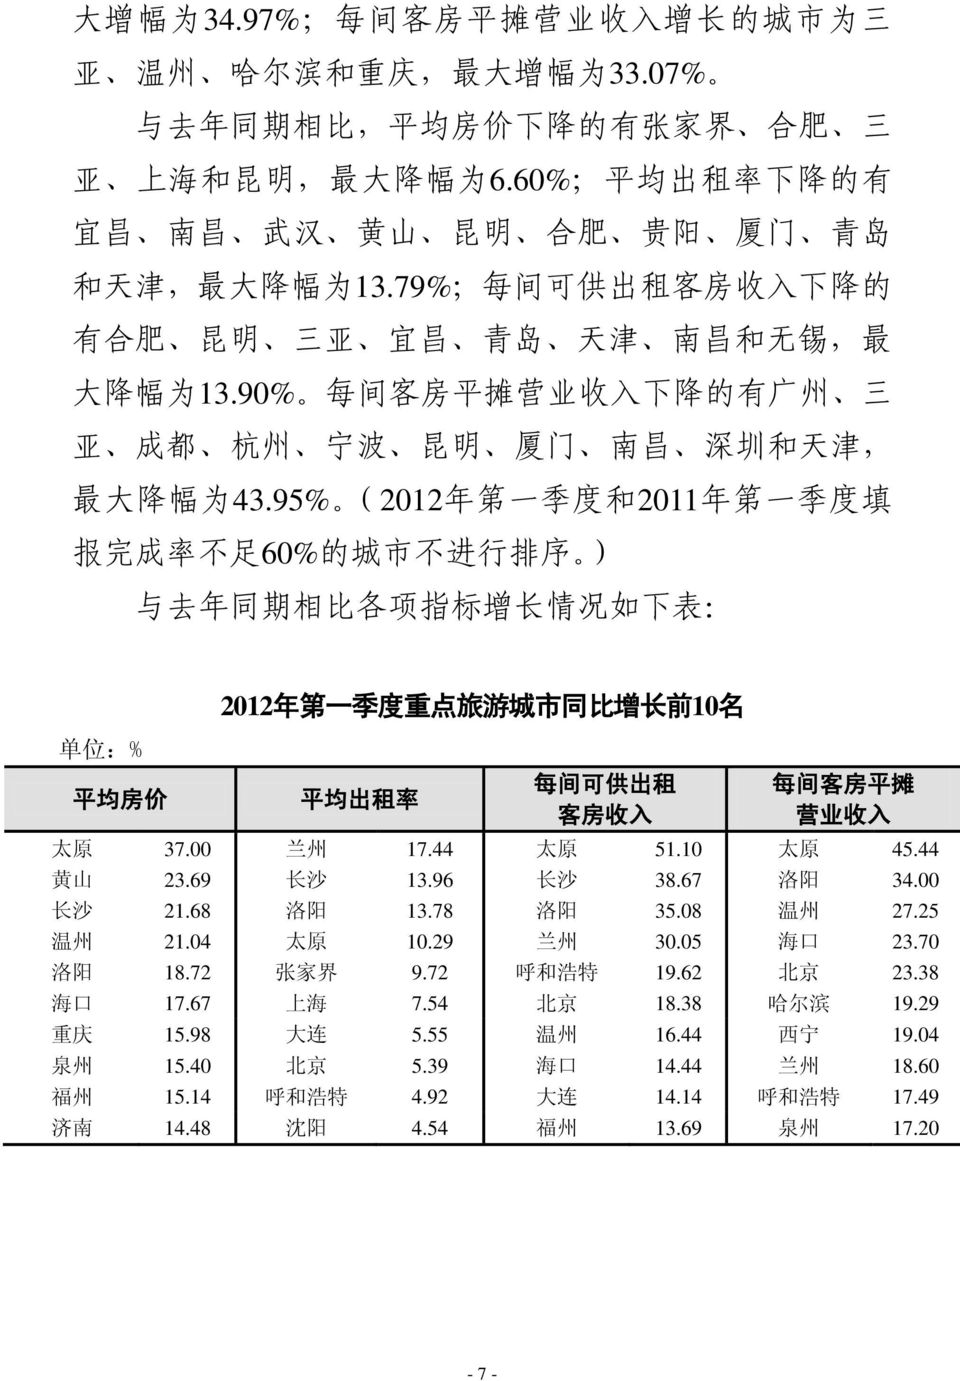 90% 每 间 客 房 平 摊 营 业 收 入 下 降 的 有 广 州 三 亚 成 都 杭 州 宁 波 昆 明 厦 门 南 昌 深 圳 和 天 津, 最 大 降 幅 为 43.